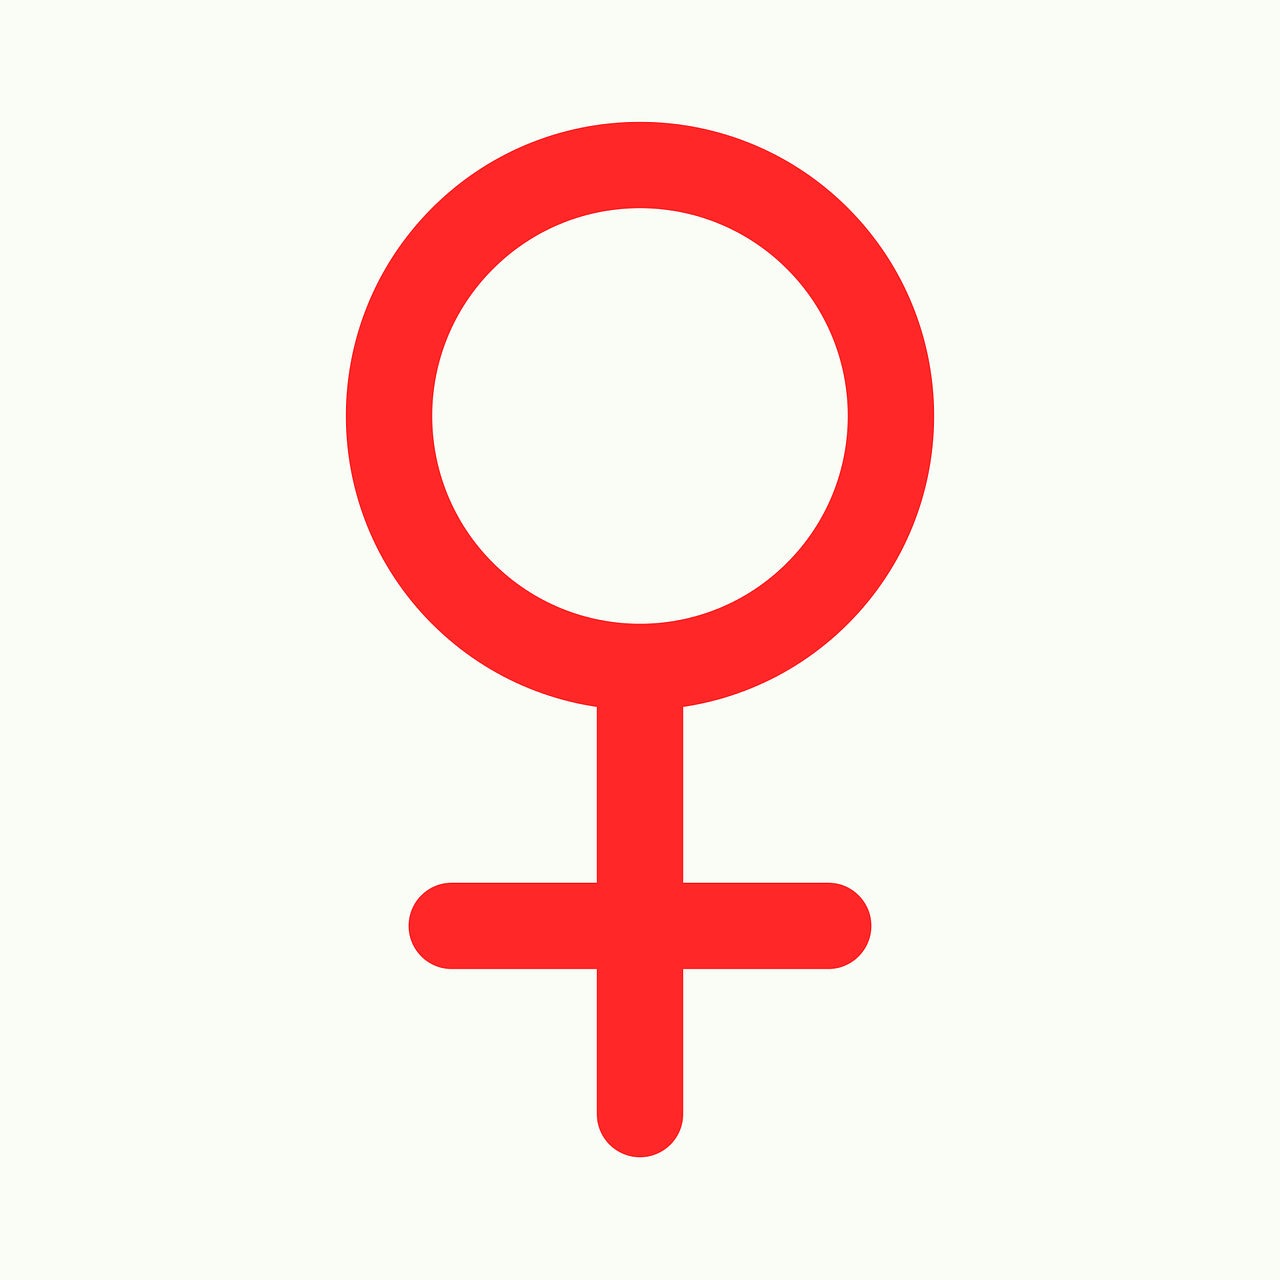 Зеркало Венеры символ. Знак женщины. Женский символ. Женский пол знак.